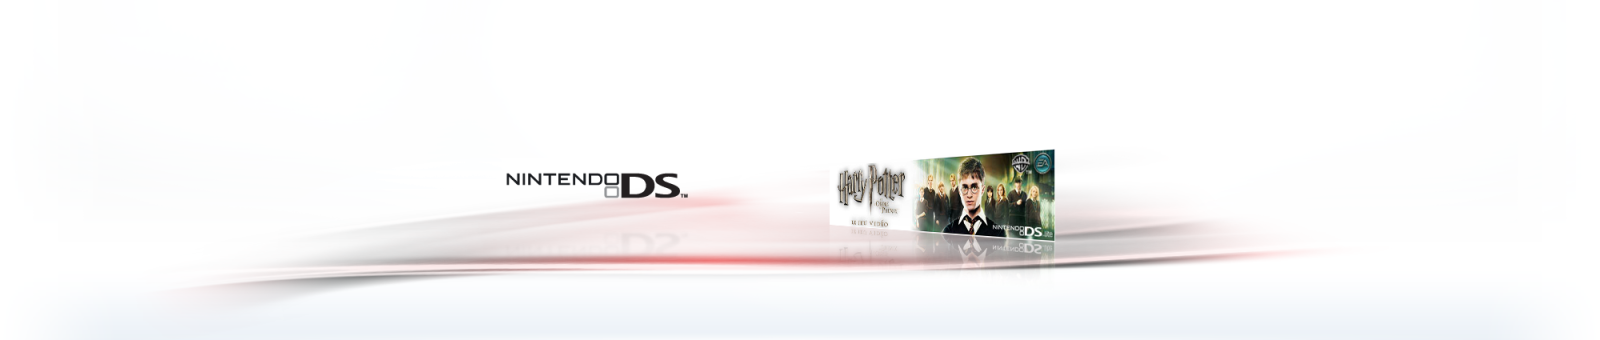 Harry Potter et lOrdre du phnix Wikipdia